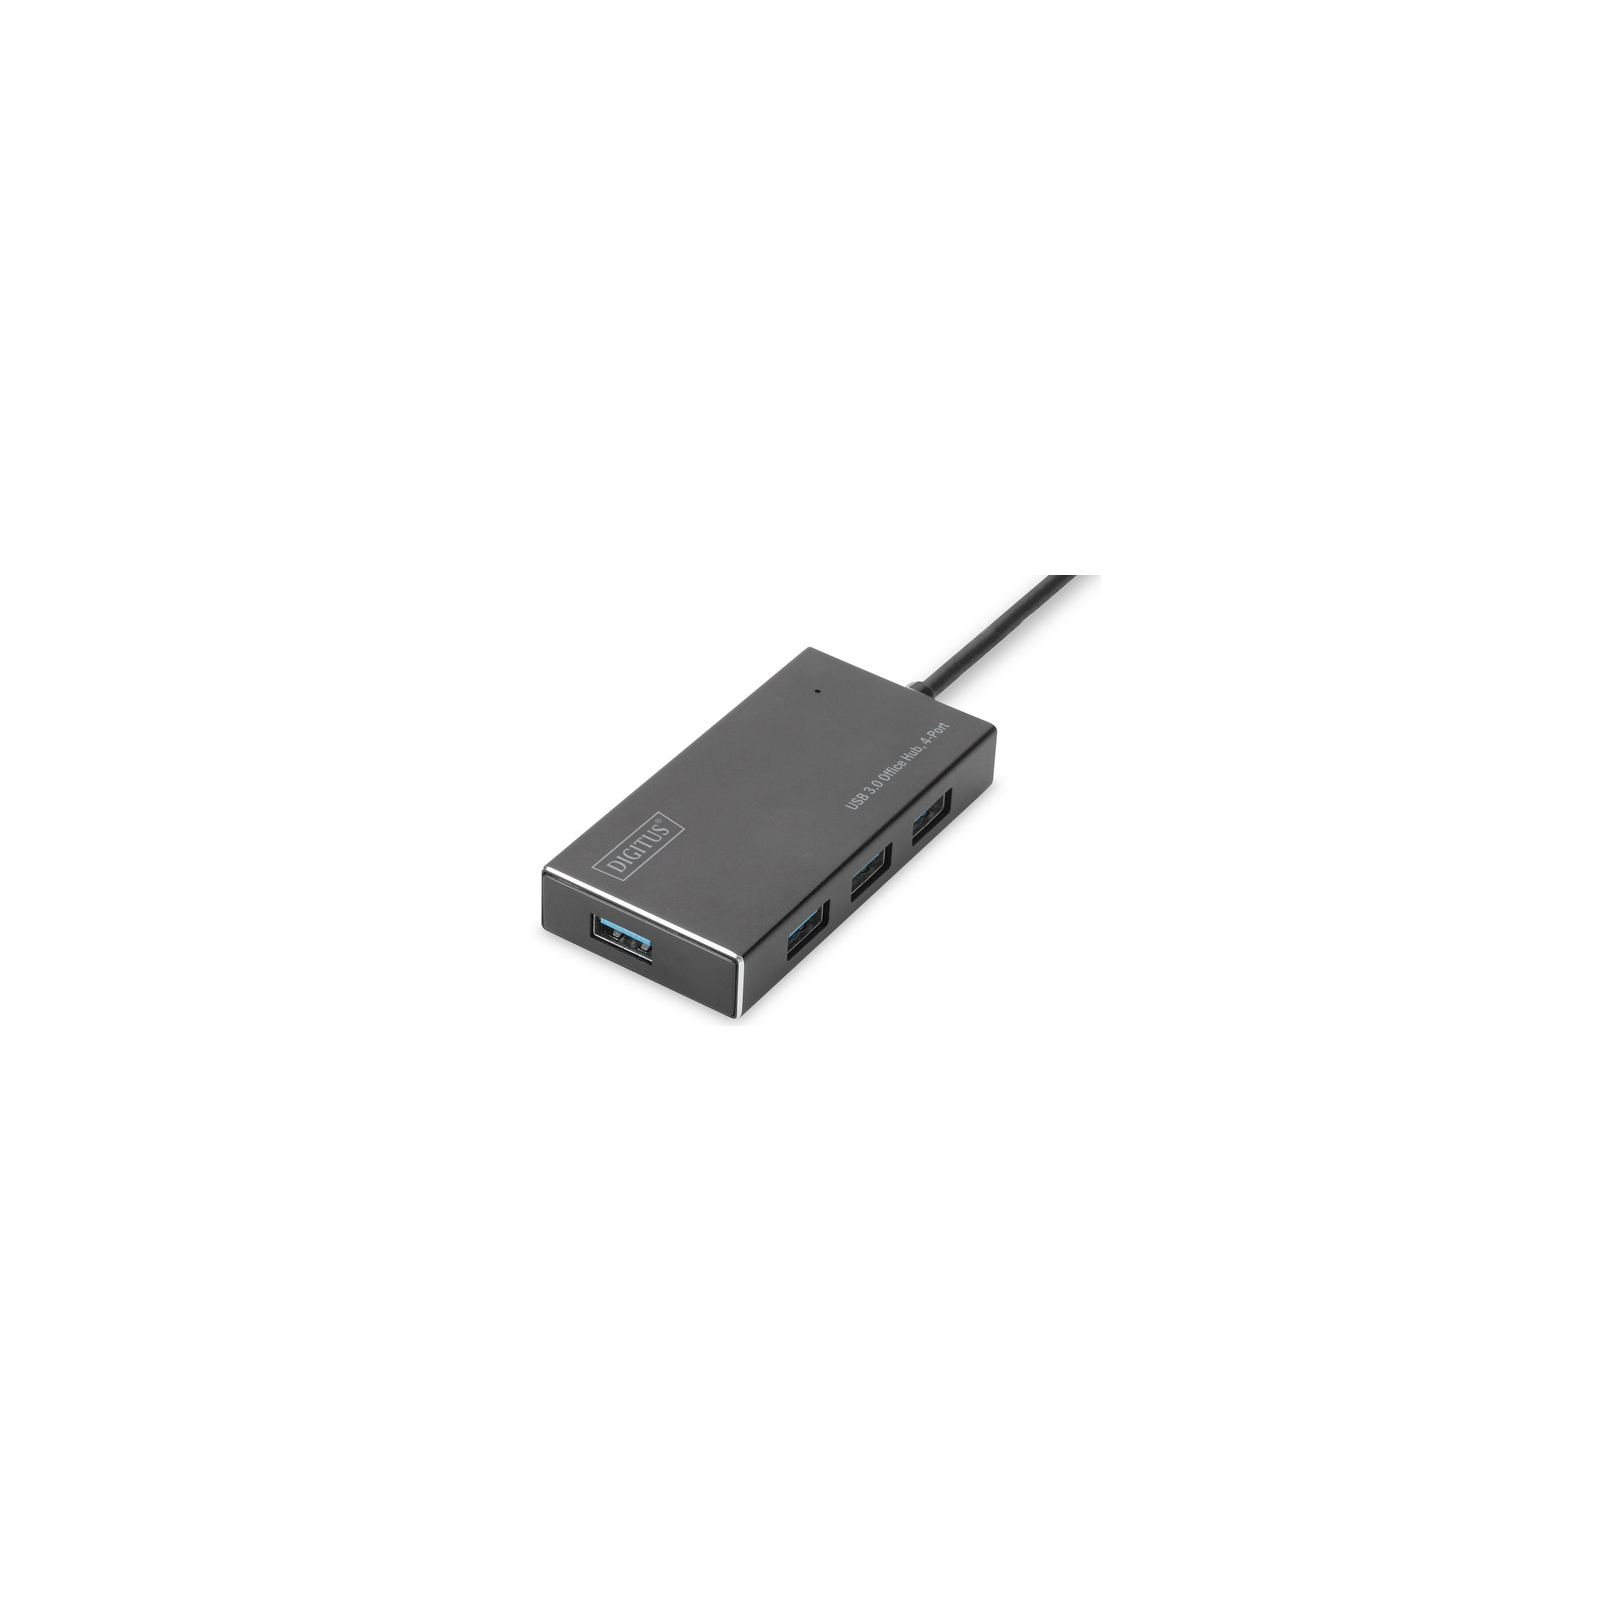 Концентратор Digitus USB 3.0 Hub, 4-port (DA-70240-1) зображення 2